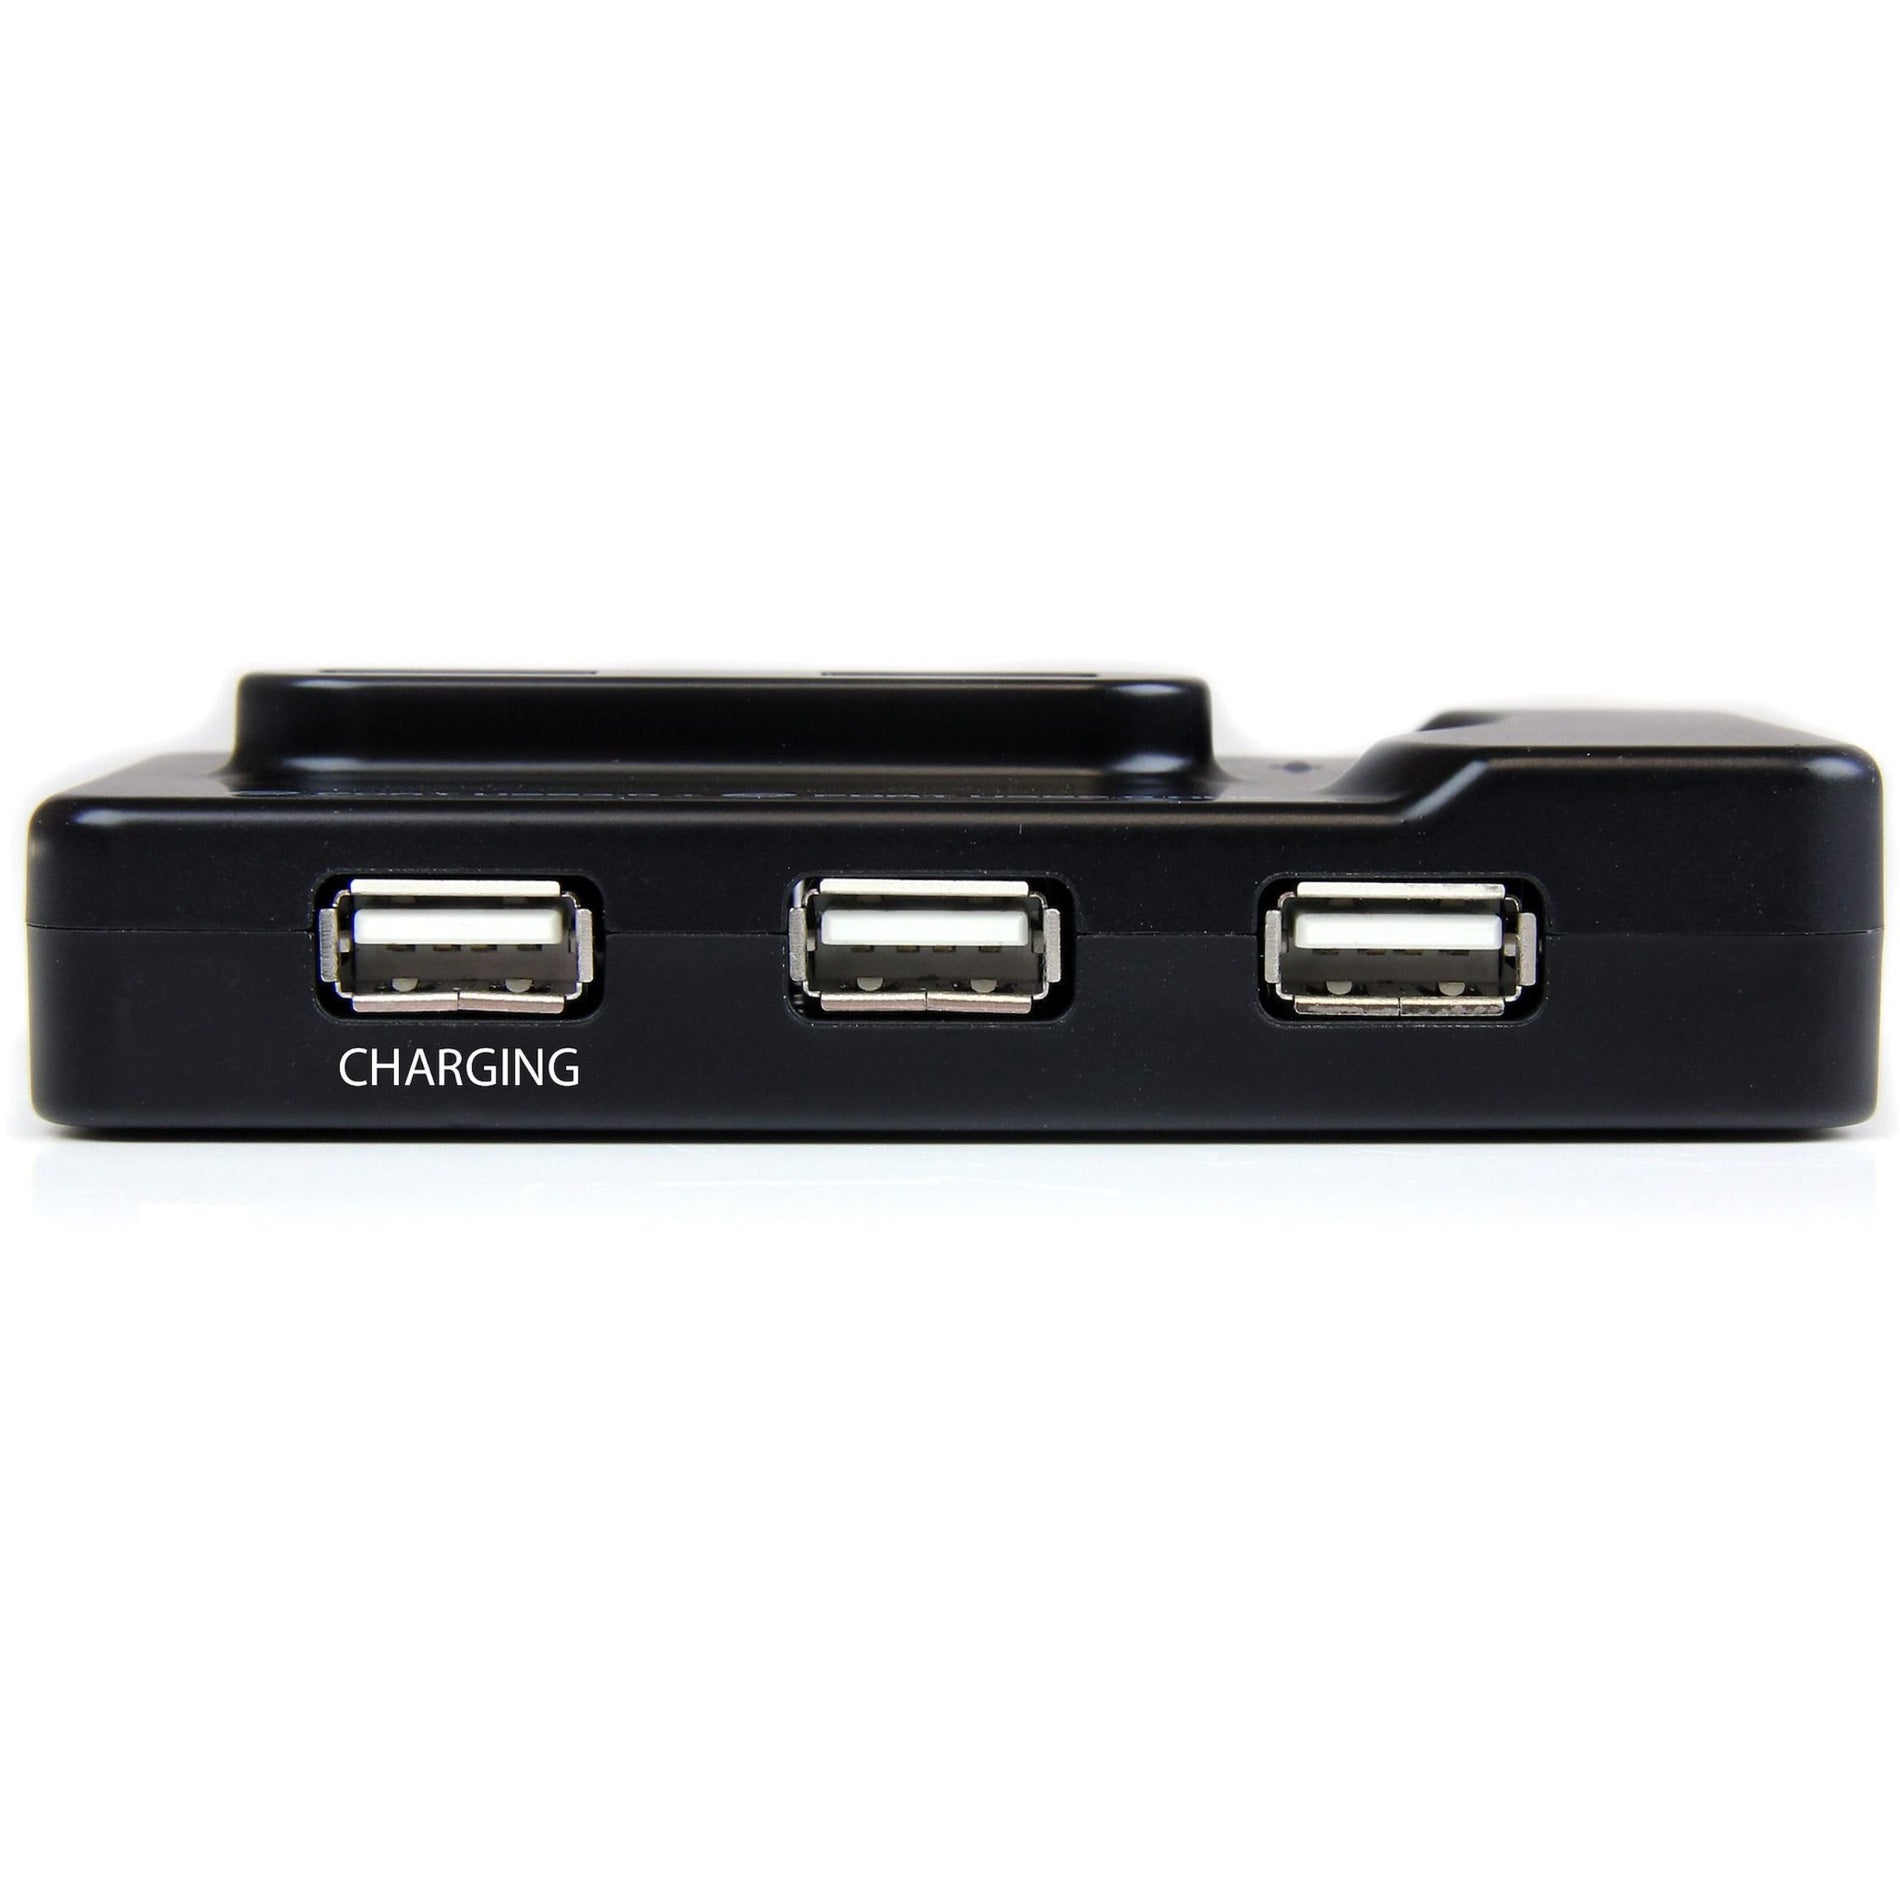 スタートレック・ドットコム ST7320USBC 6ポート USB 3.0/2.0 コンボ ハブ チャージングポート付き、USB 接続を拡張する